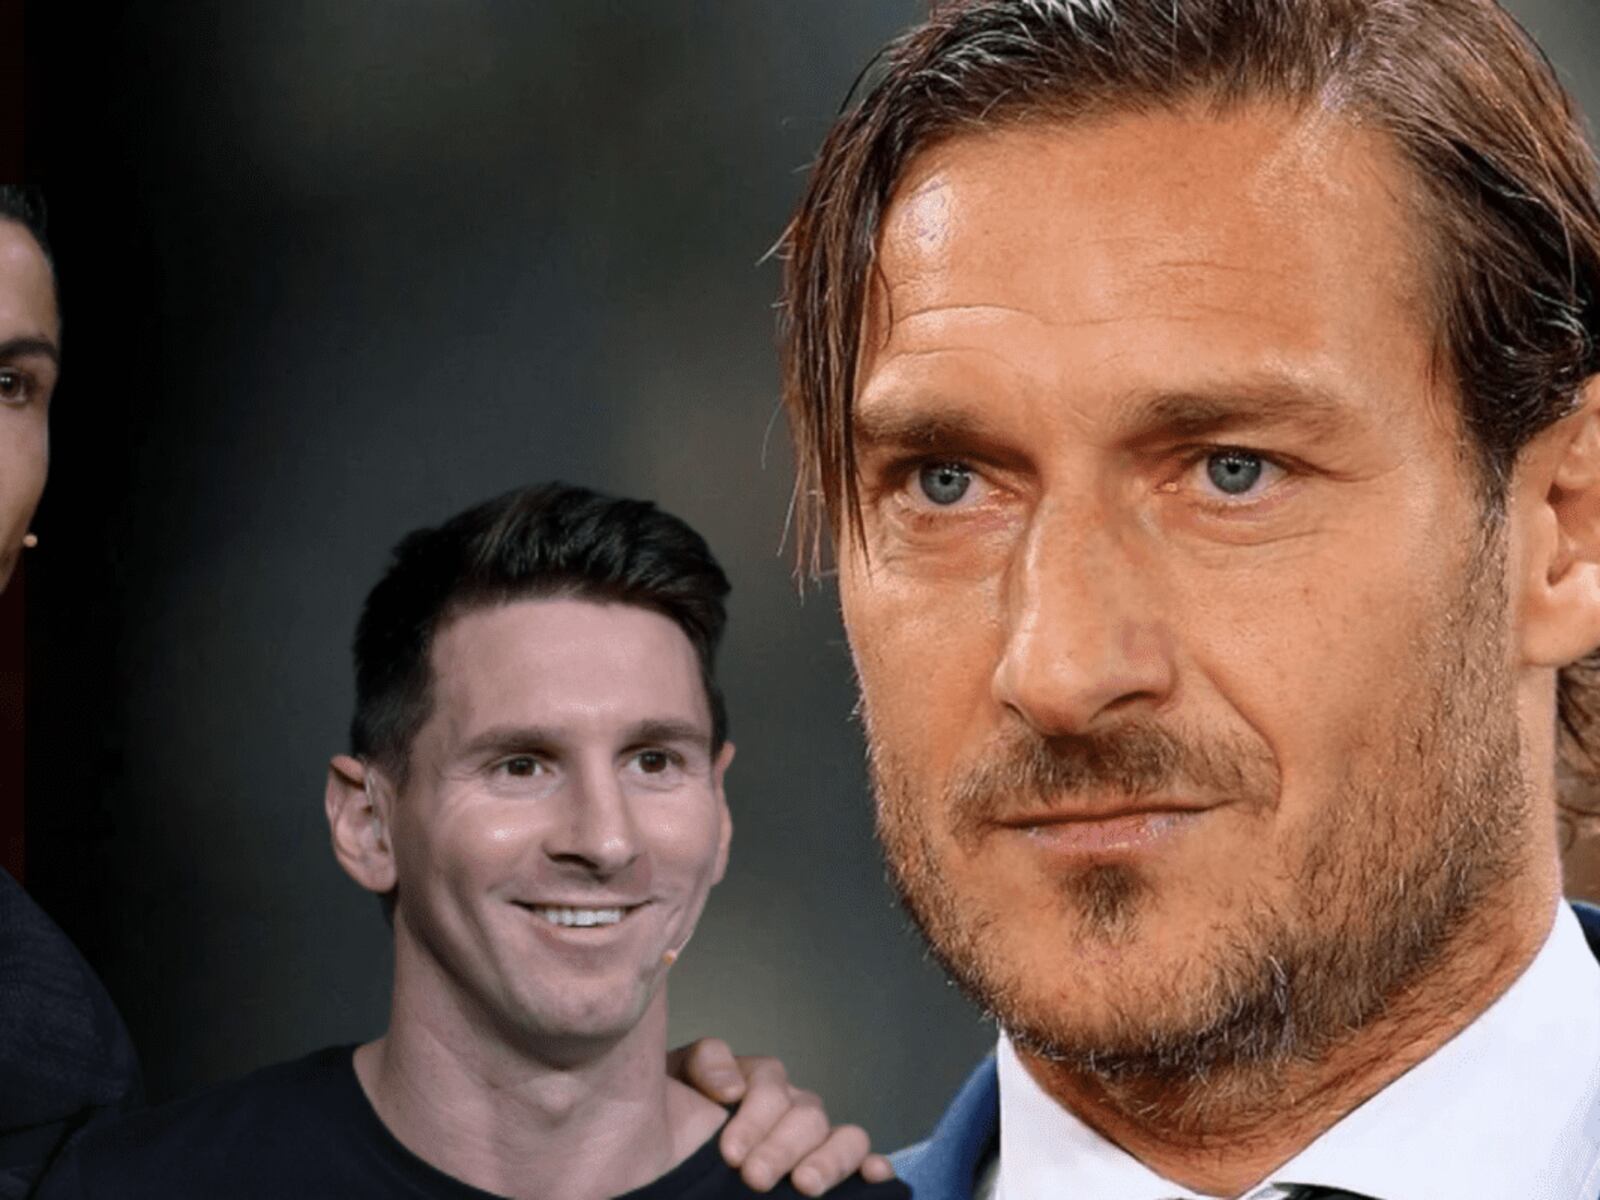 Tiene 38 años, Totti lo considera mejor que Messi y no es Cristiano Ronaldo